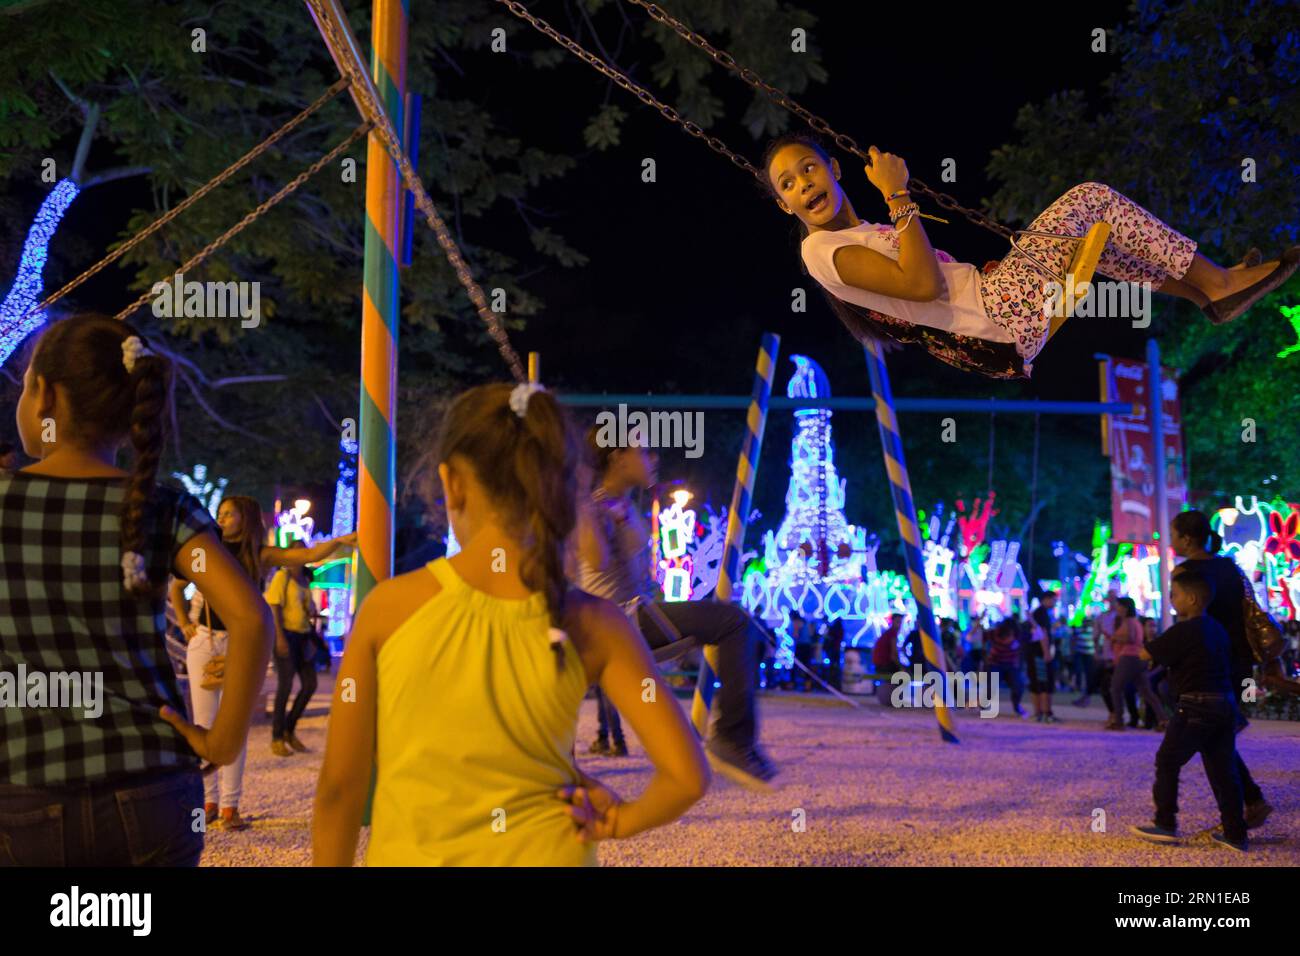 (141223) -- SANTO DOMINGO, 22 dicembre 2014 -- i bambini giocano durante l'evento Bright Christmas , all'Iberoamerica Park, a Santo Domingo, Repubblica Dominicana, il 22 dicembre, 2014. secondo la stampa locale, l'evento è visitato dalle famiglie dominicane per ammirare le luci e le decorazioni natalizie. Fran Afonoso) REPUBBLICA DOMINICANA-SANTO DOMINGO-SOCIETY-CHRISTMAS e FRANxAFONSO PUBLICATIONxNOTxINxCHN Santo Domingo DEC 22 2014 bambini giocano durante l'evento Bright Christmas AL Park di Santo Domingo Repubblica Dominicana IL 22 dicembre 2014 l'evento È visitato dalle famiglie dominicane per godersi le luci e l'arredamento natalizi Foto Stock